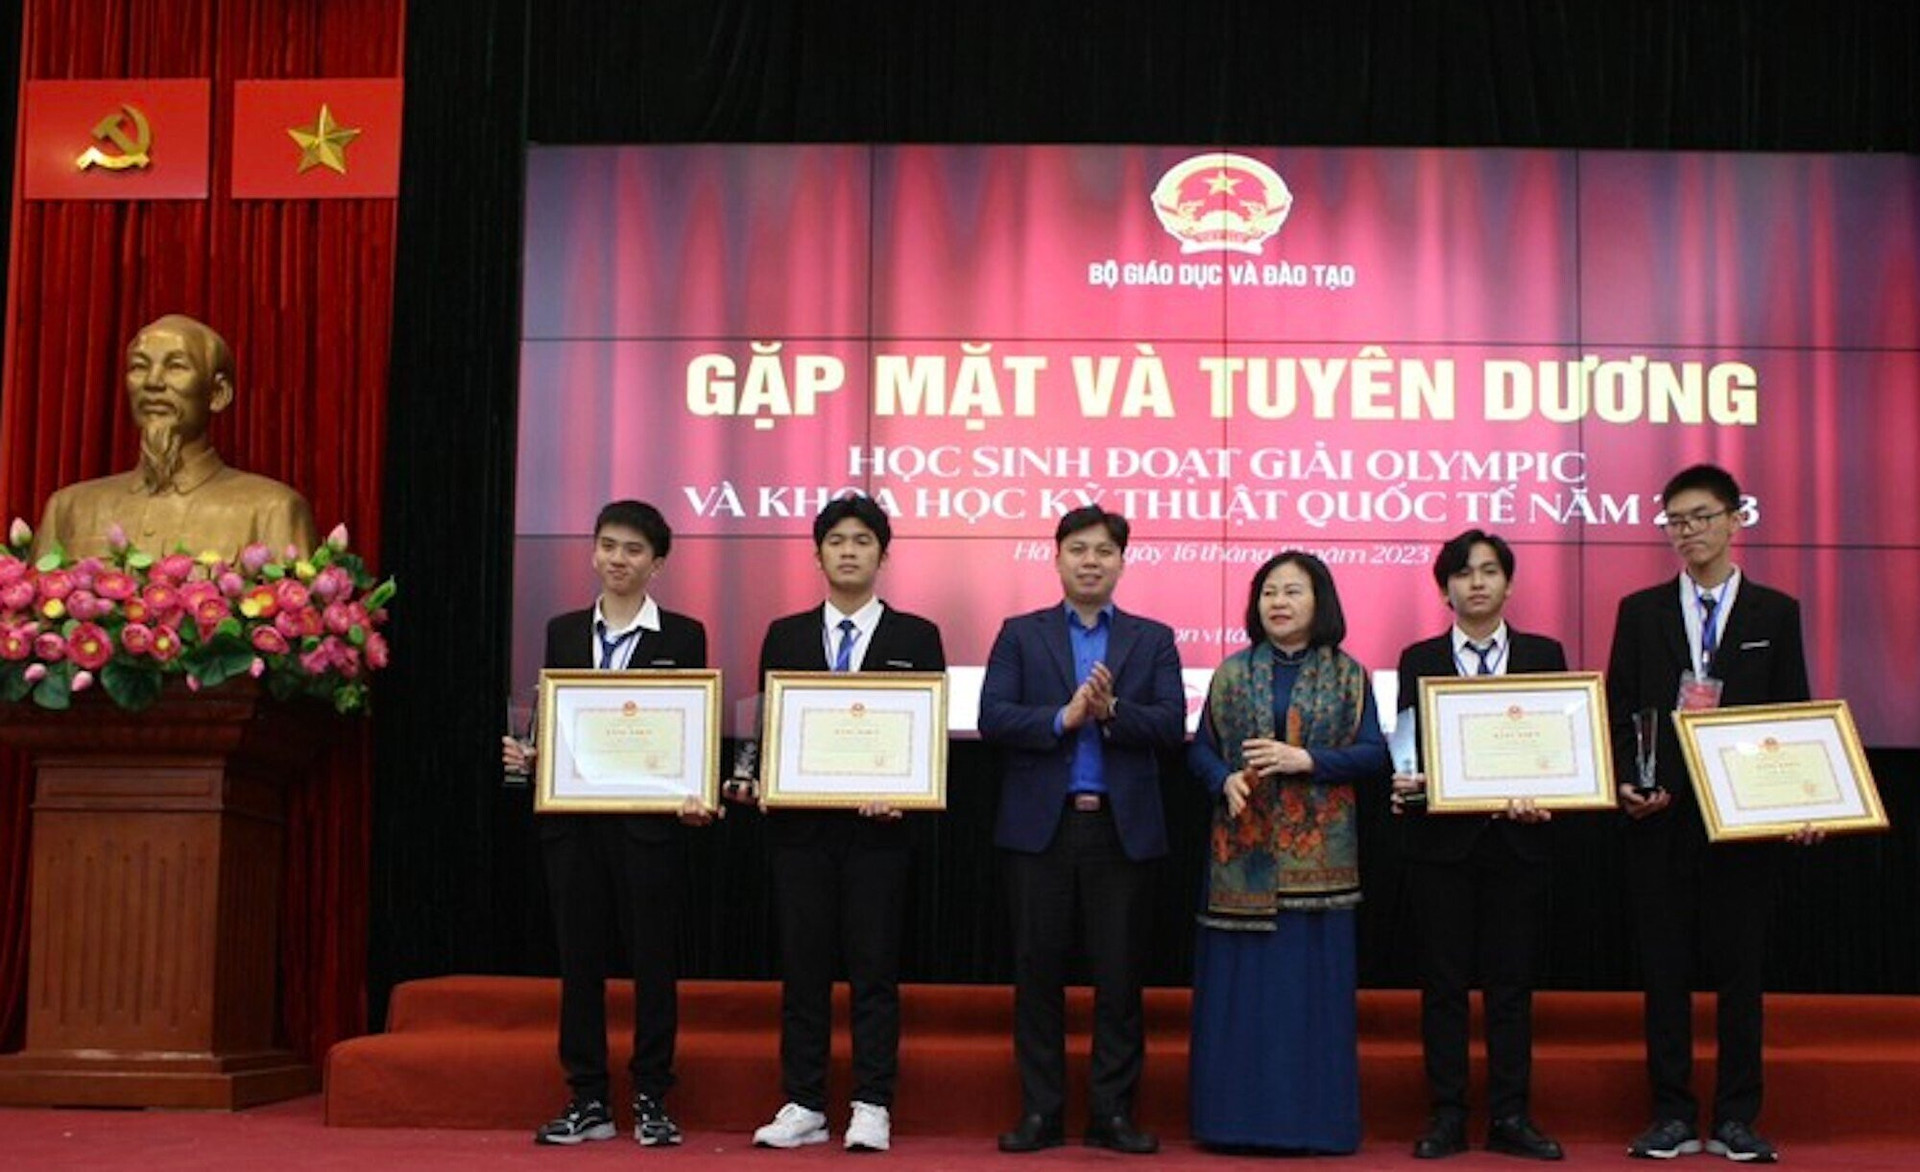 Thứ trưởng Ngô Thị Minh (giữa) trao bằng khen của Bộ trưởng GD&ĐT cho các học sinh. (Ảnh: Bộ GD&ĐT)